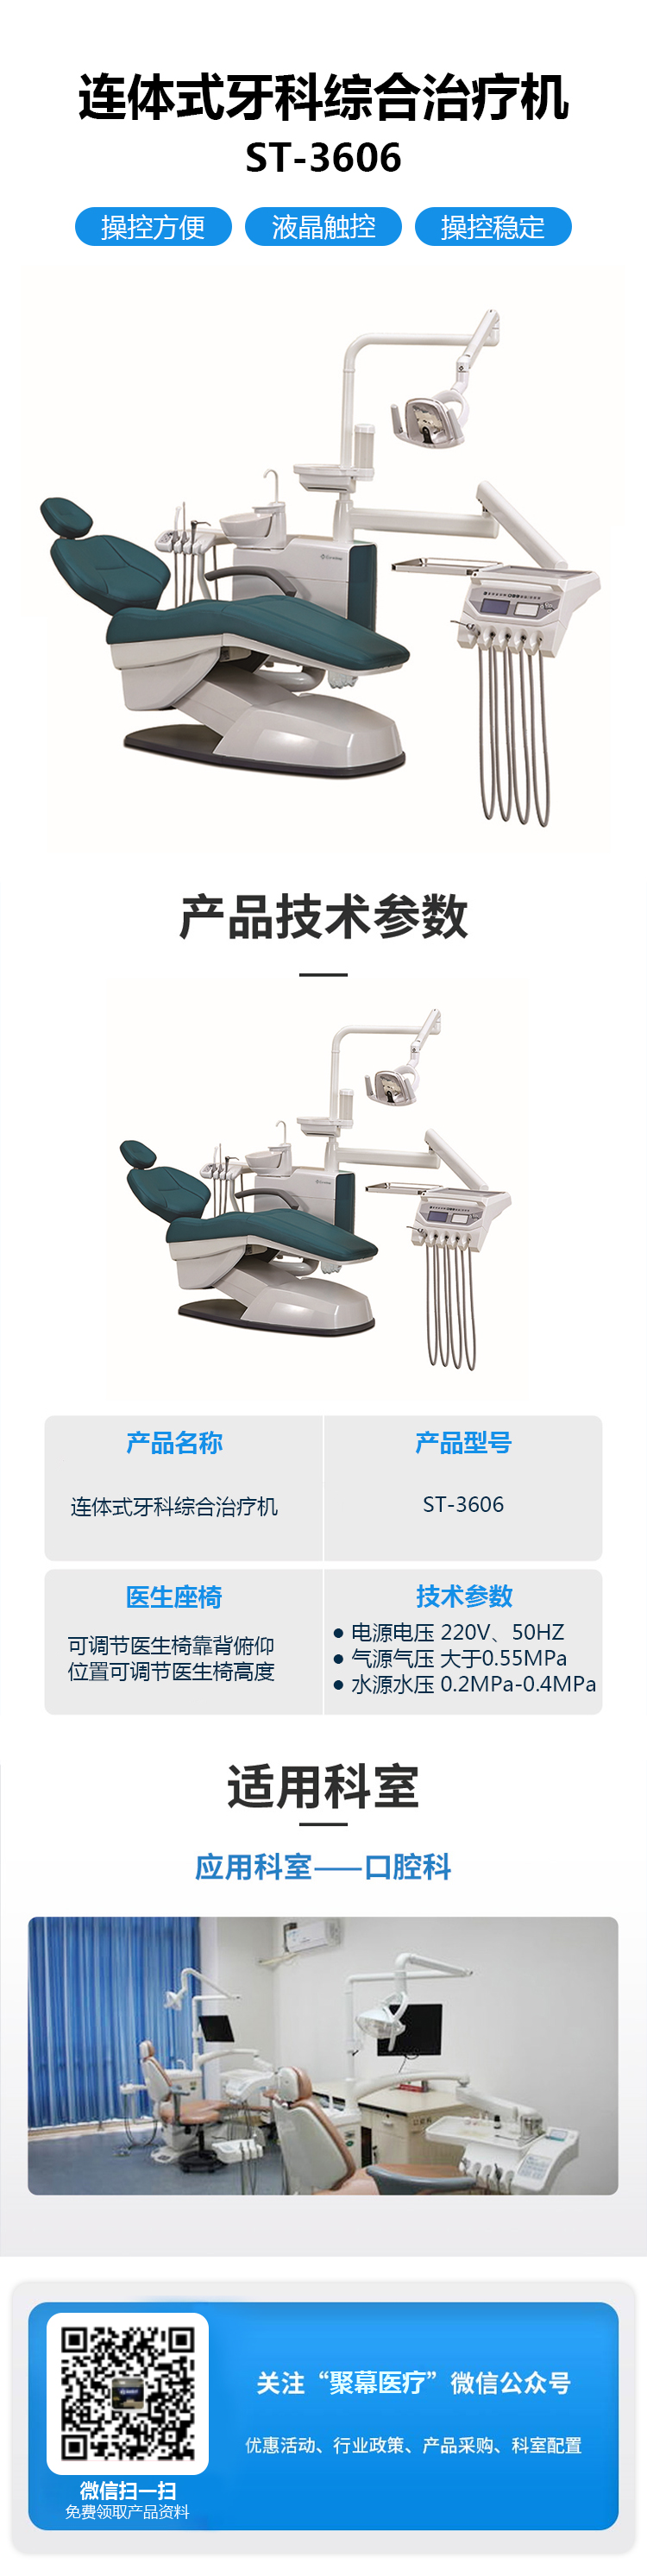 连体式牙科综合治疗机 ST-3606 种植牙椅.jpg